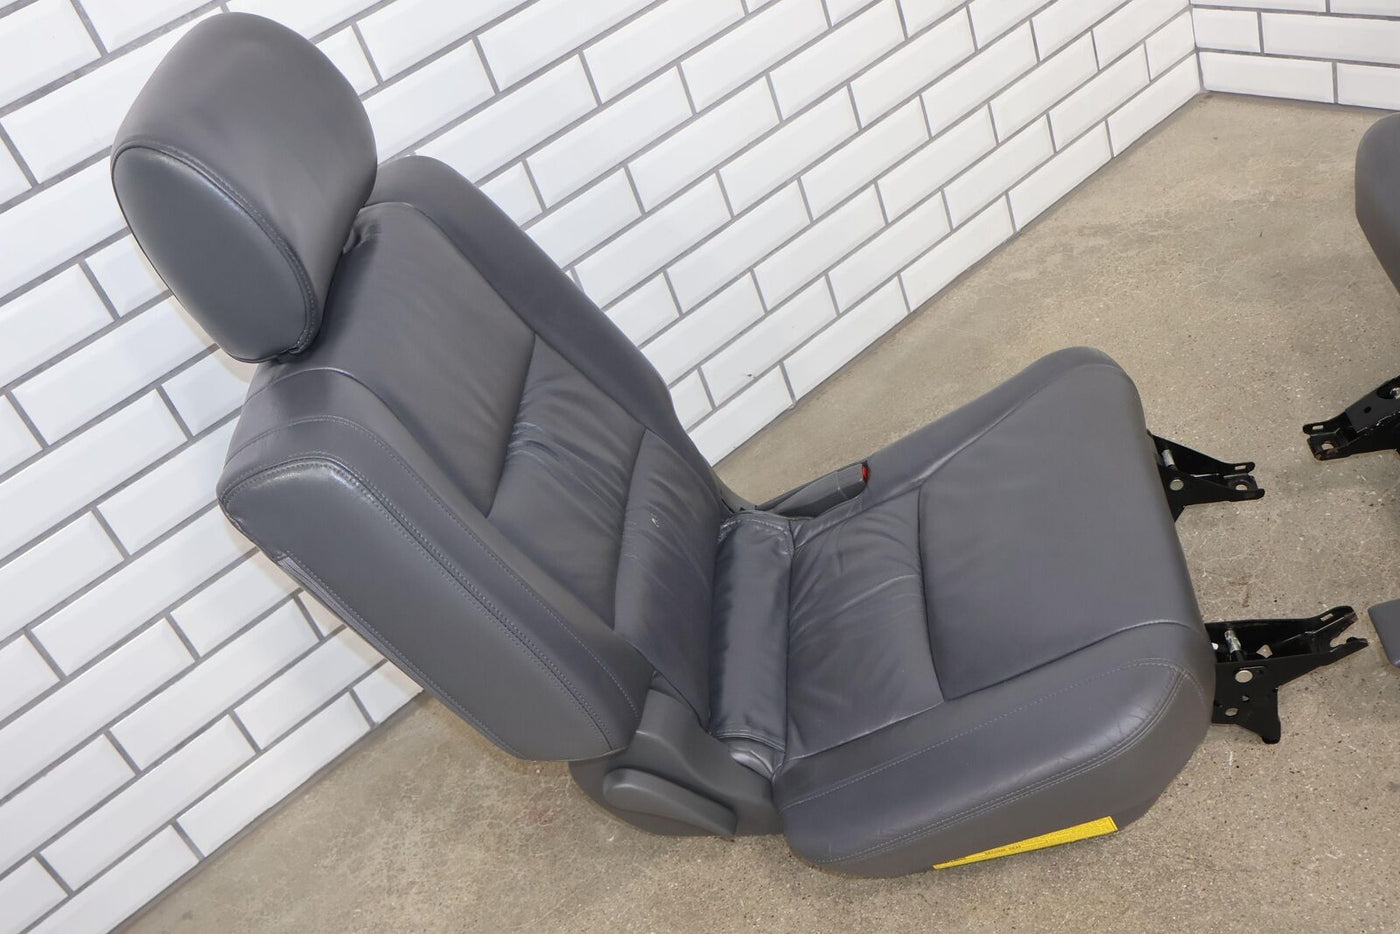 03-09 Lexus GX470 Pair LH&RH 2nd Leather Seat Set (Gray LH10) Mild Wear